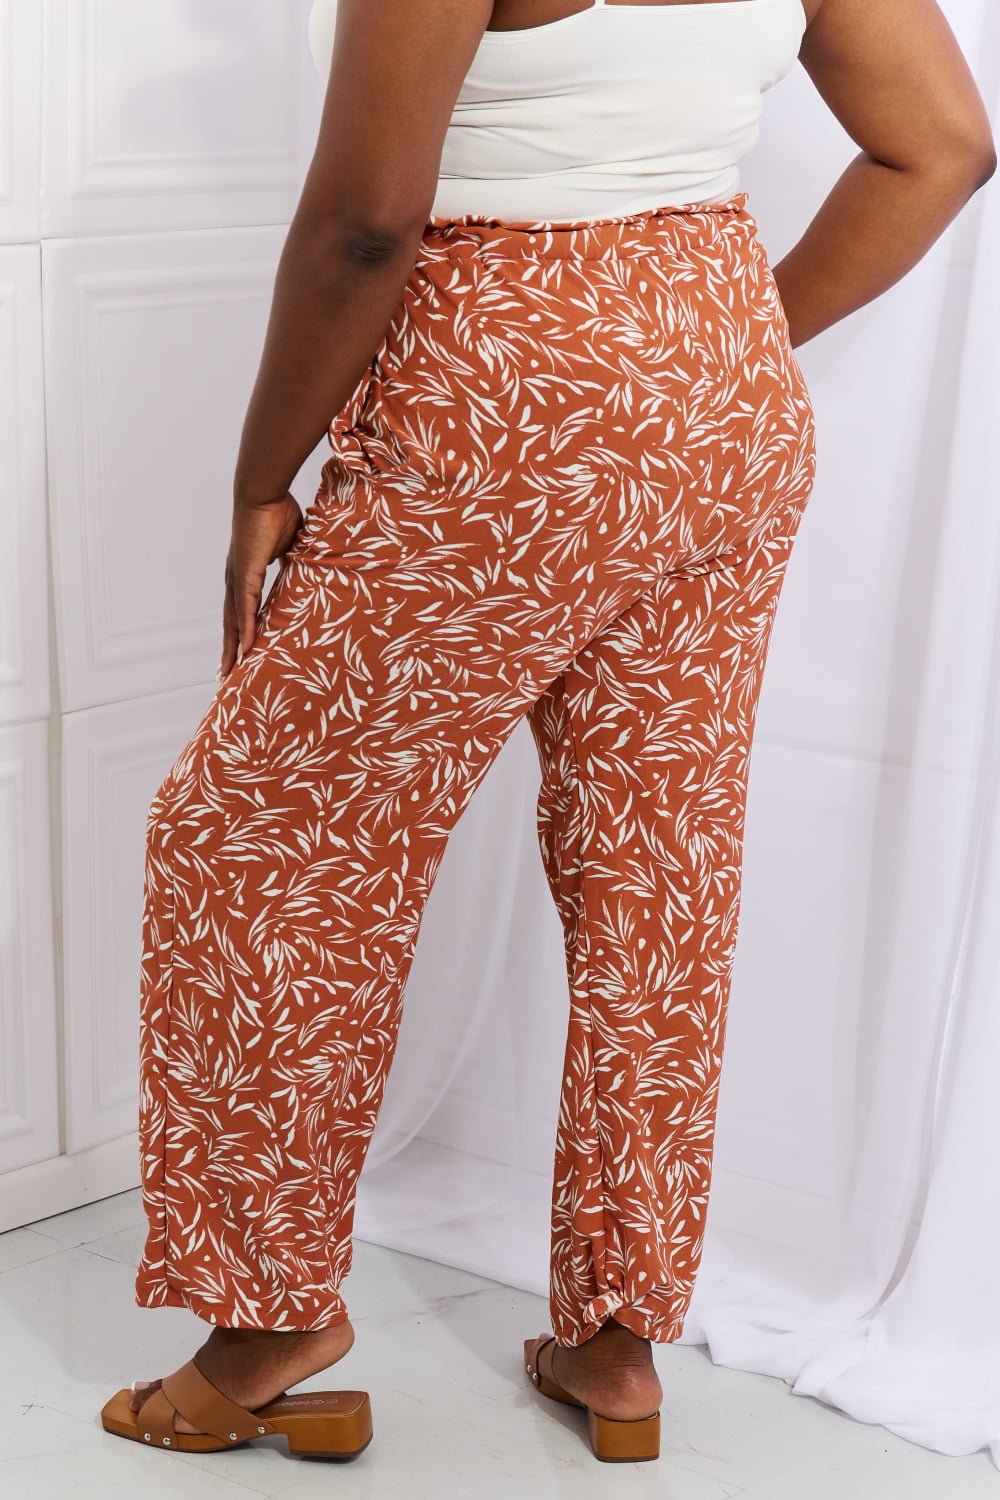 Geometric Print Belted Pants in Red OrangePantsHeimish